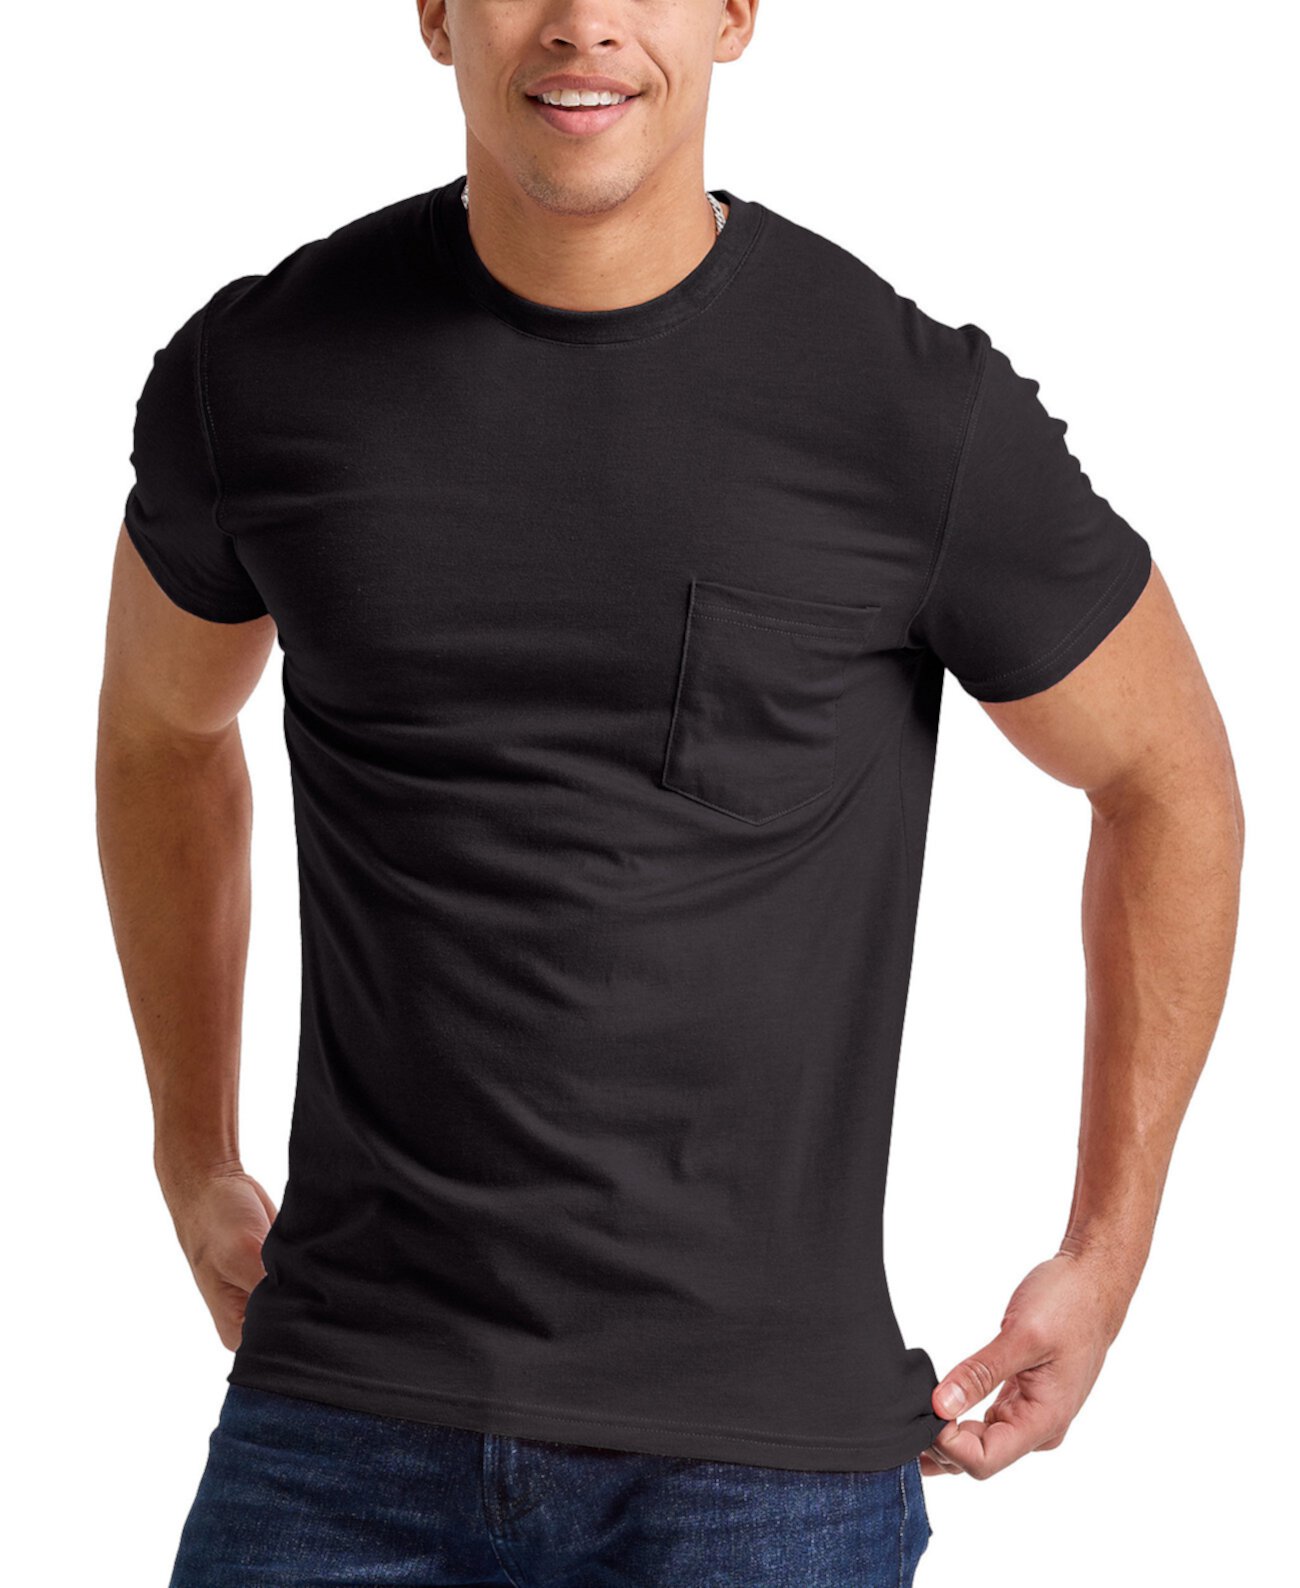 Мужская футболка Originals Tri-Blend с короткими рукавами и карманами Hanes